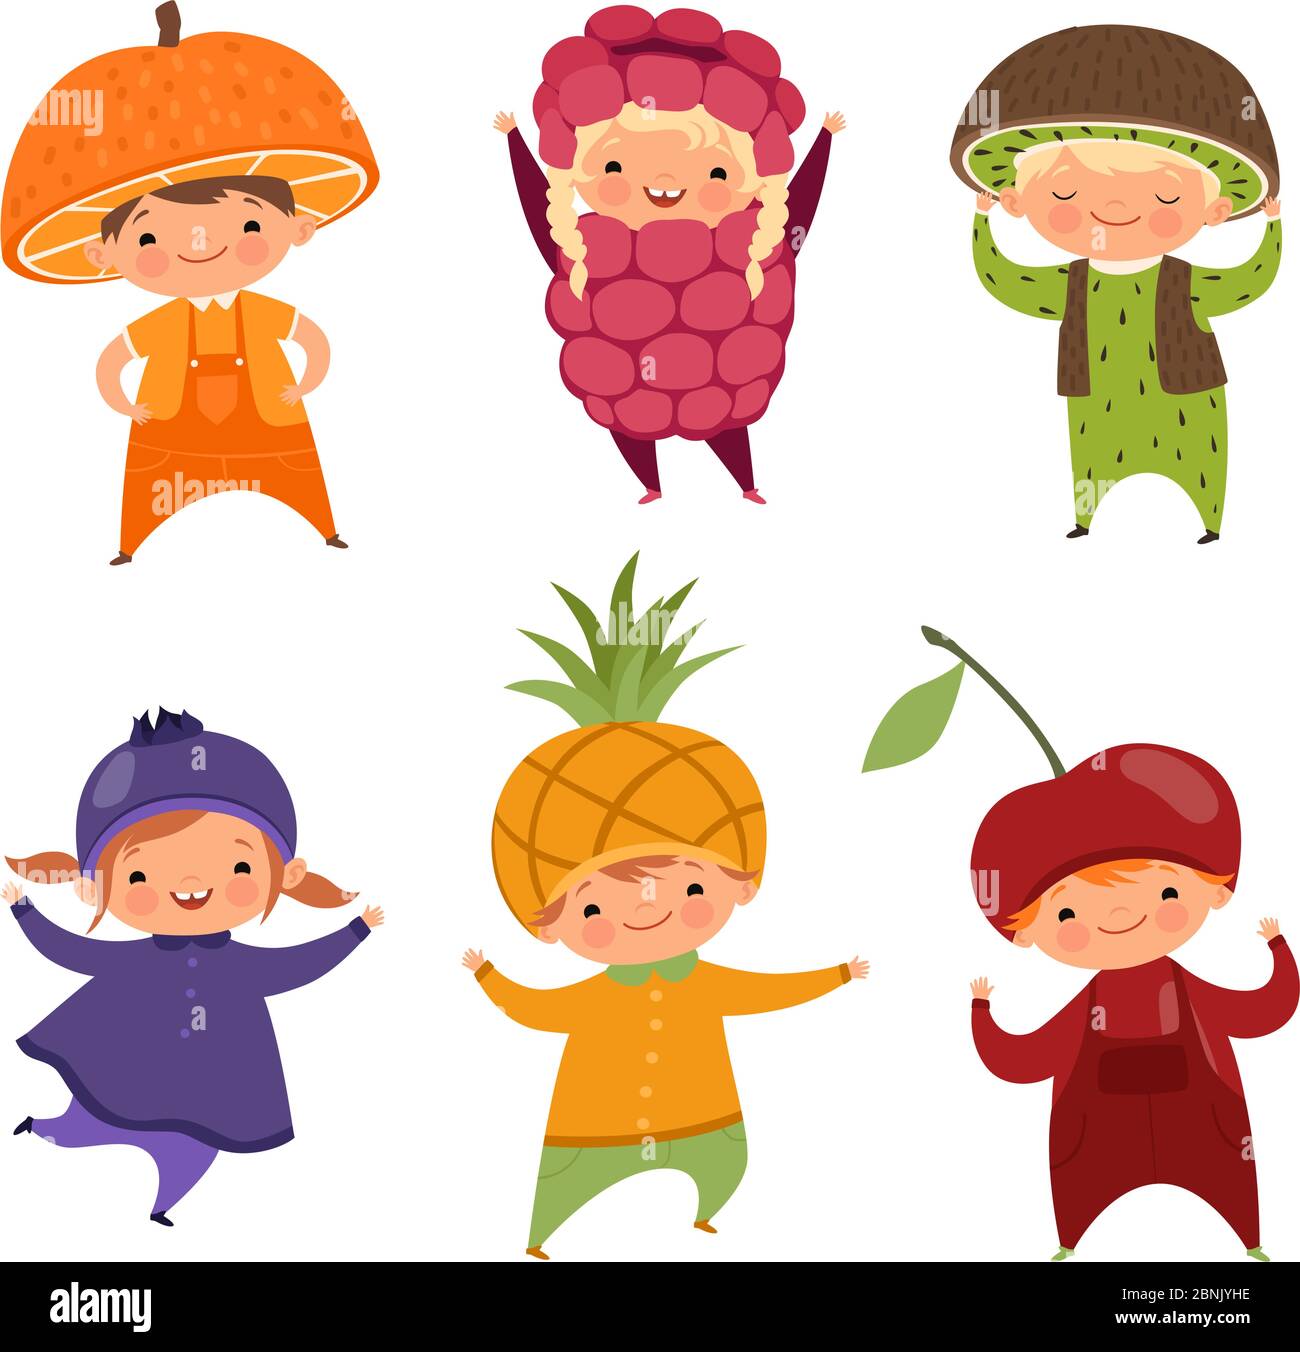 Bambini in costumi di frutta. Immagini vettoriali di vari vestiti  divertenti per bambini Immagine e Vettoriale - Alamy